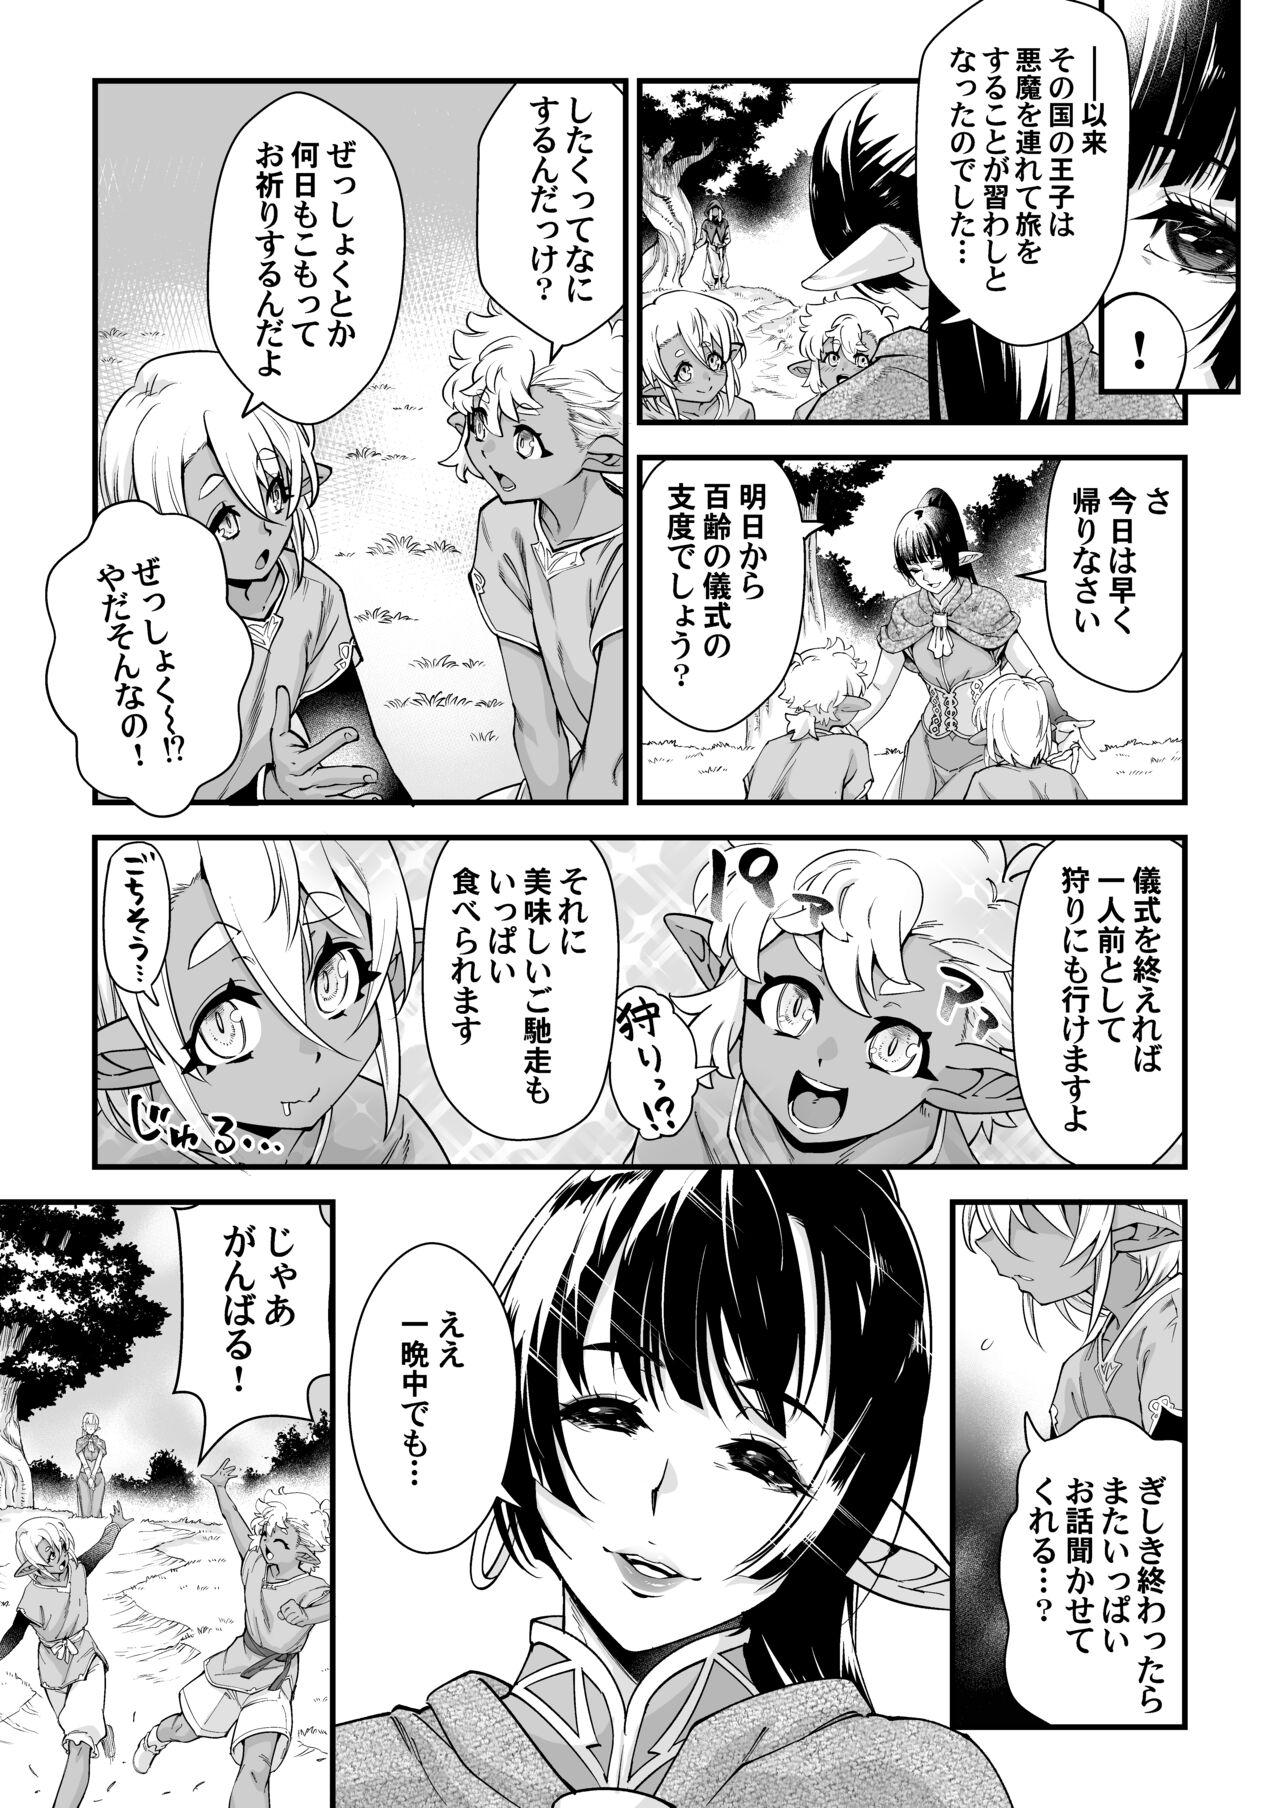 Bubblebutt Kuroi mori no o hanashi - Original Desperate - Page 7